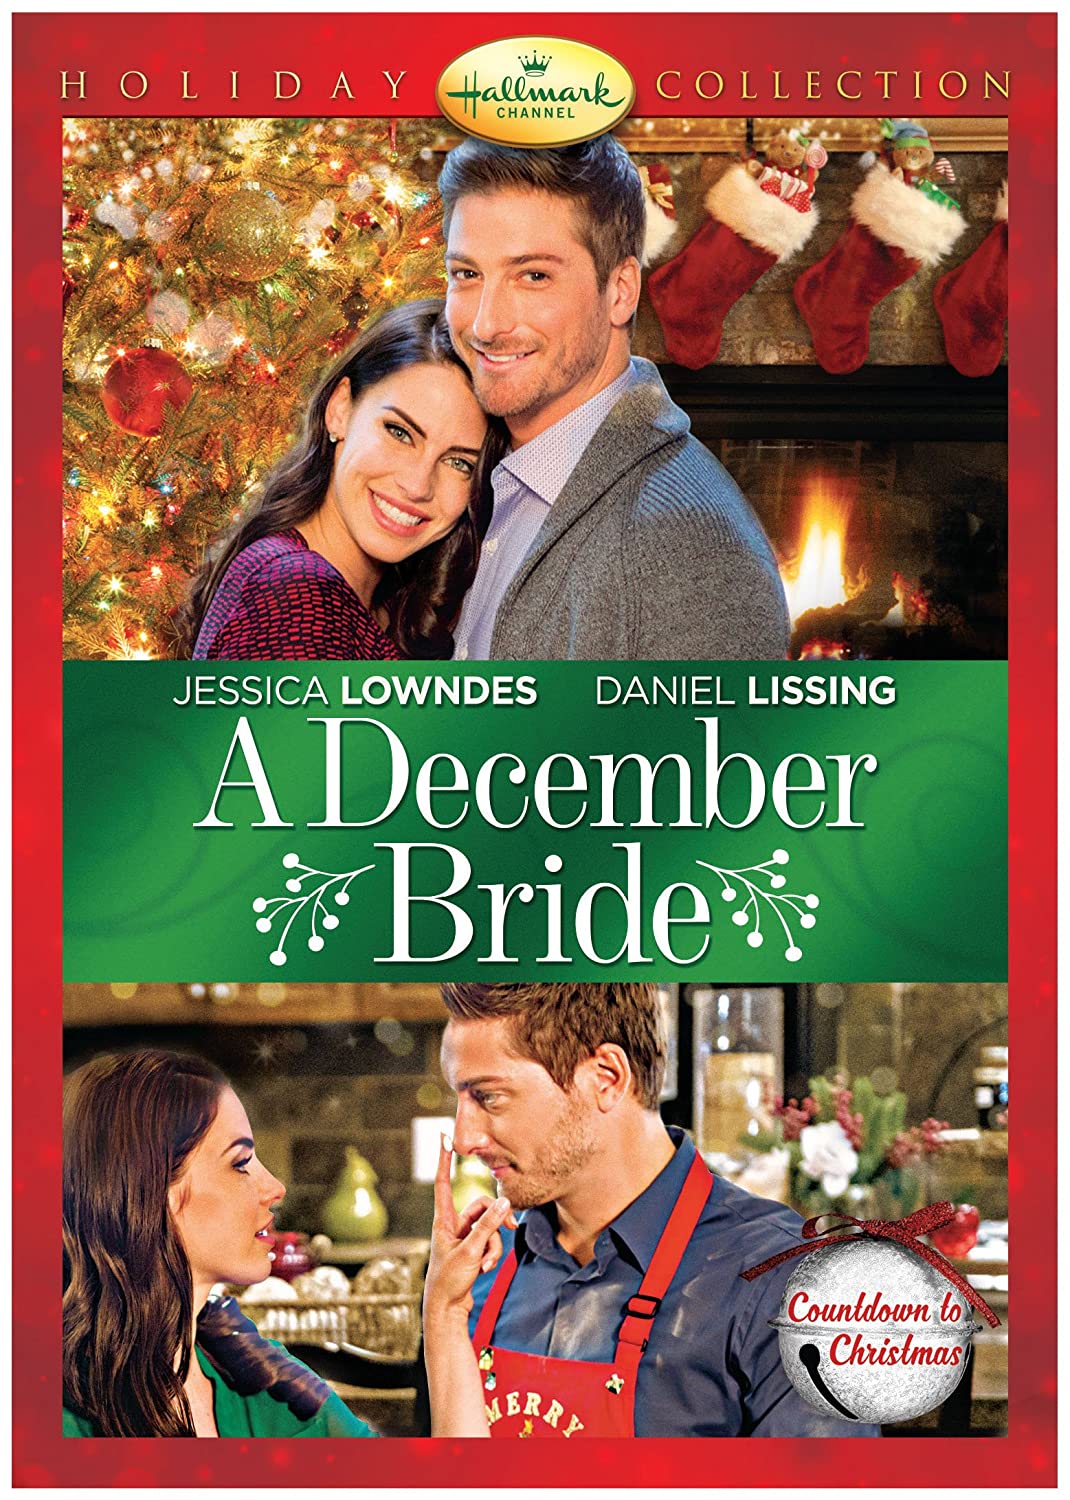 A December Bride (2016)